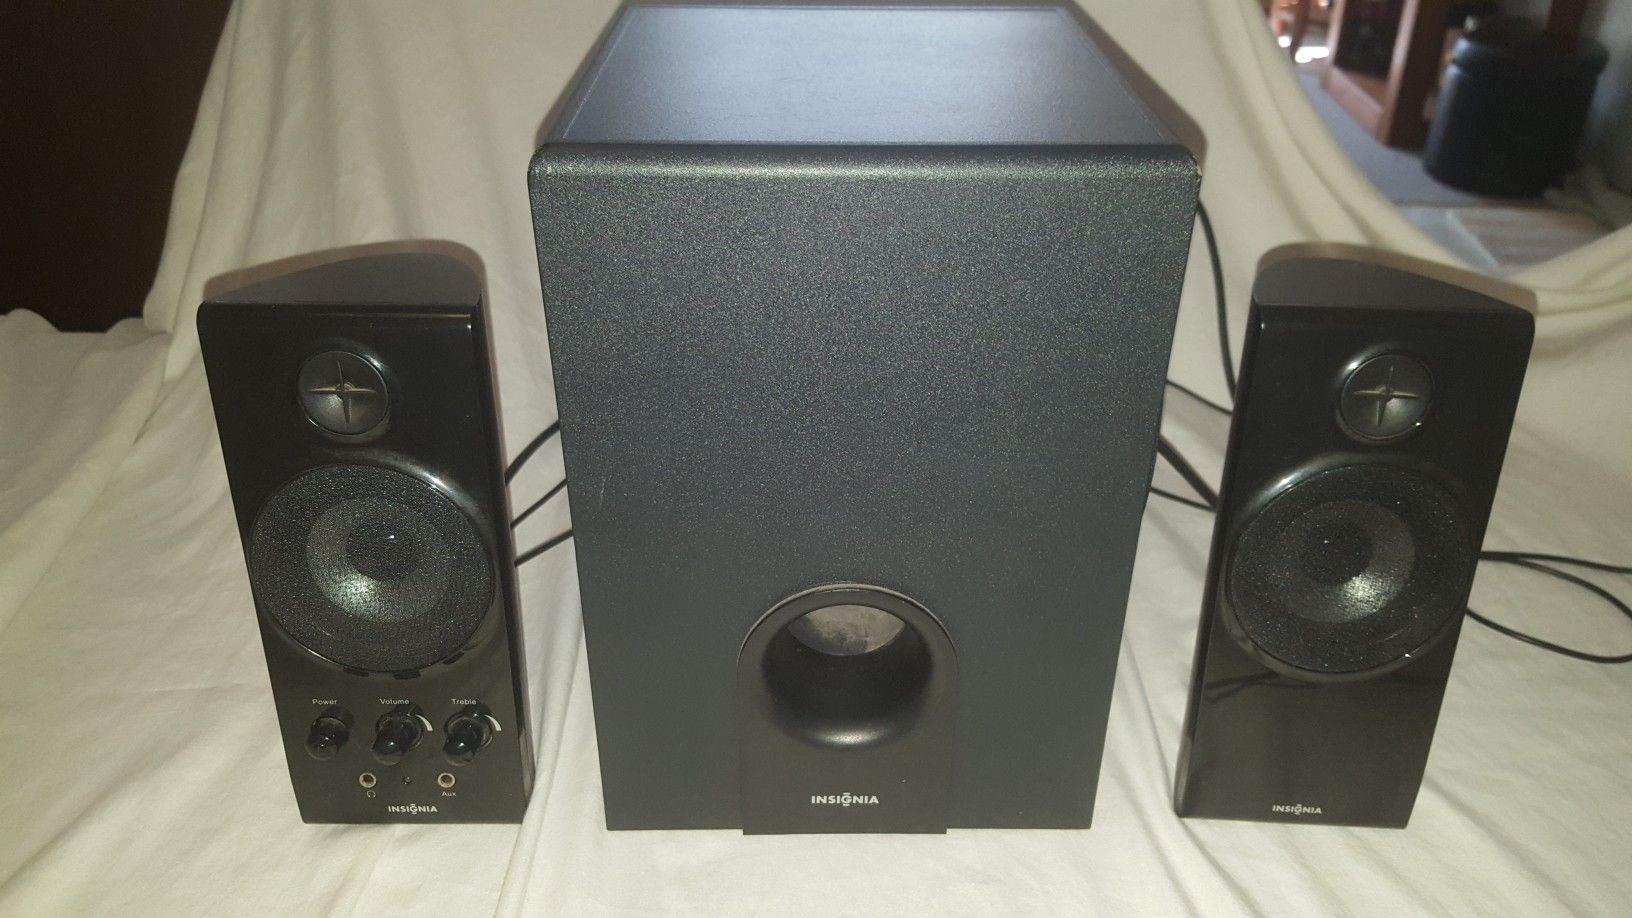 Insignia computer speaker set